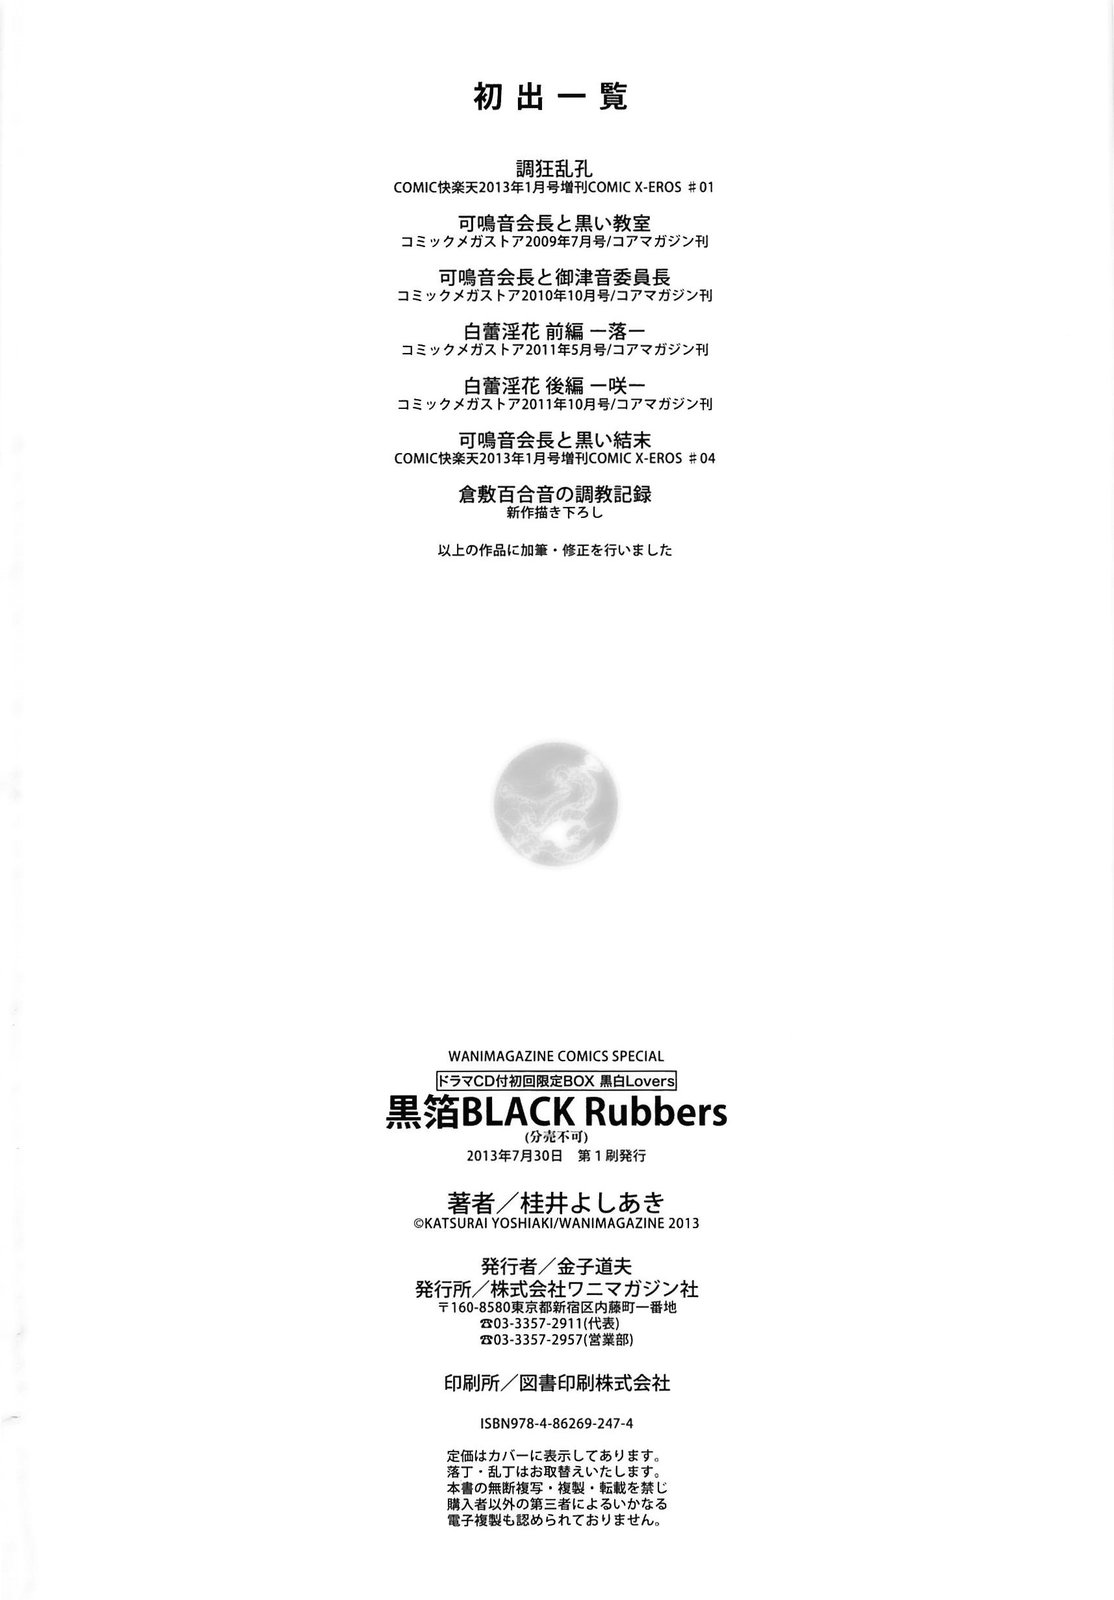 [桂井よしあき] 黒箔Black Rubbers